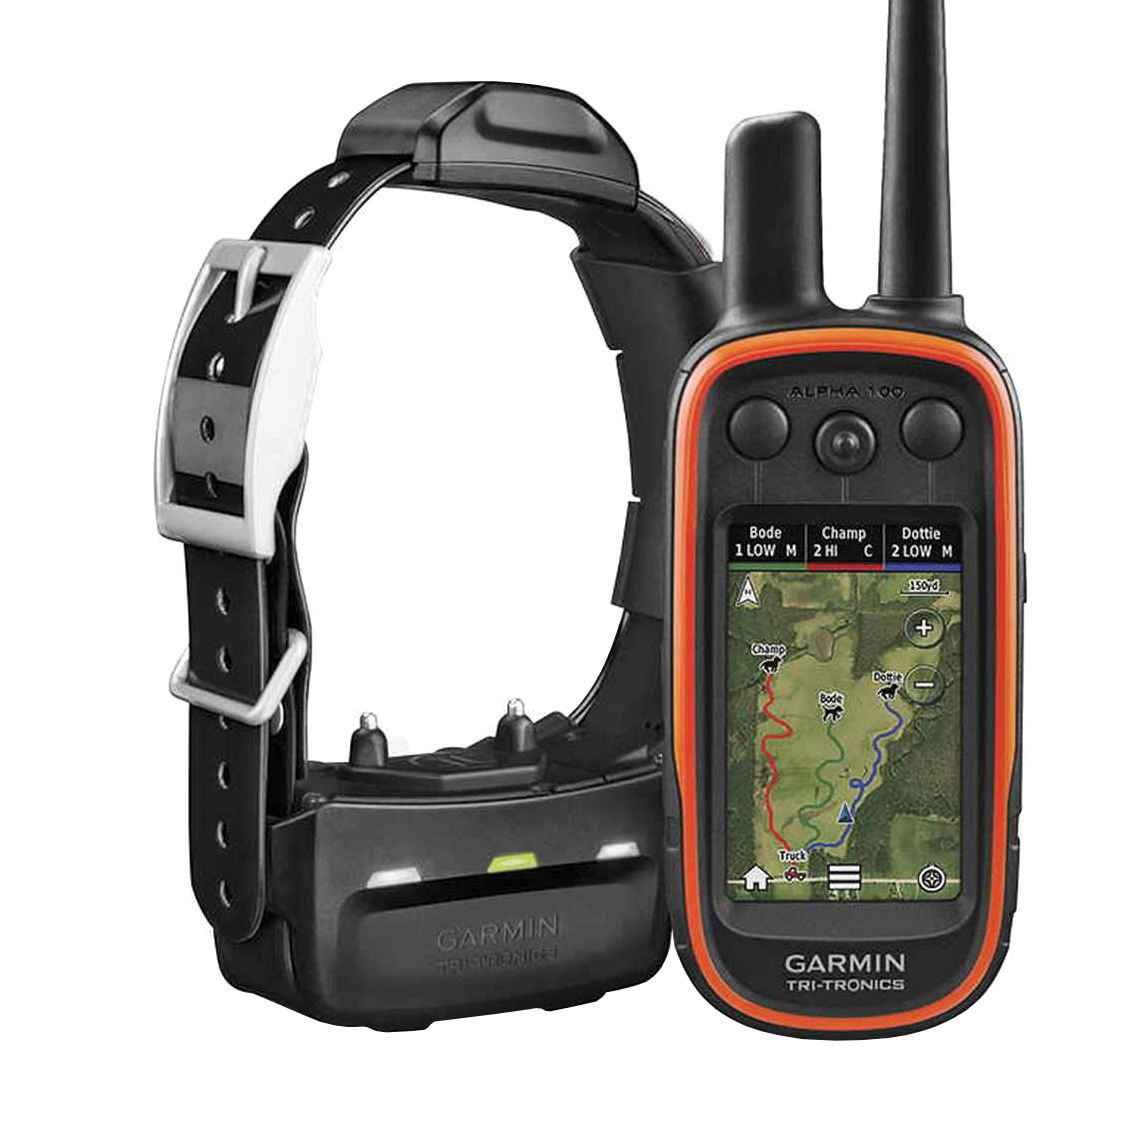 the Garmin Alpha GPS and TT15 collar